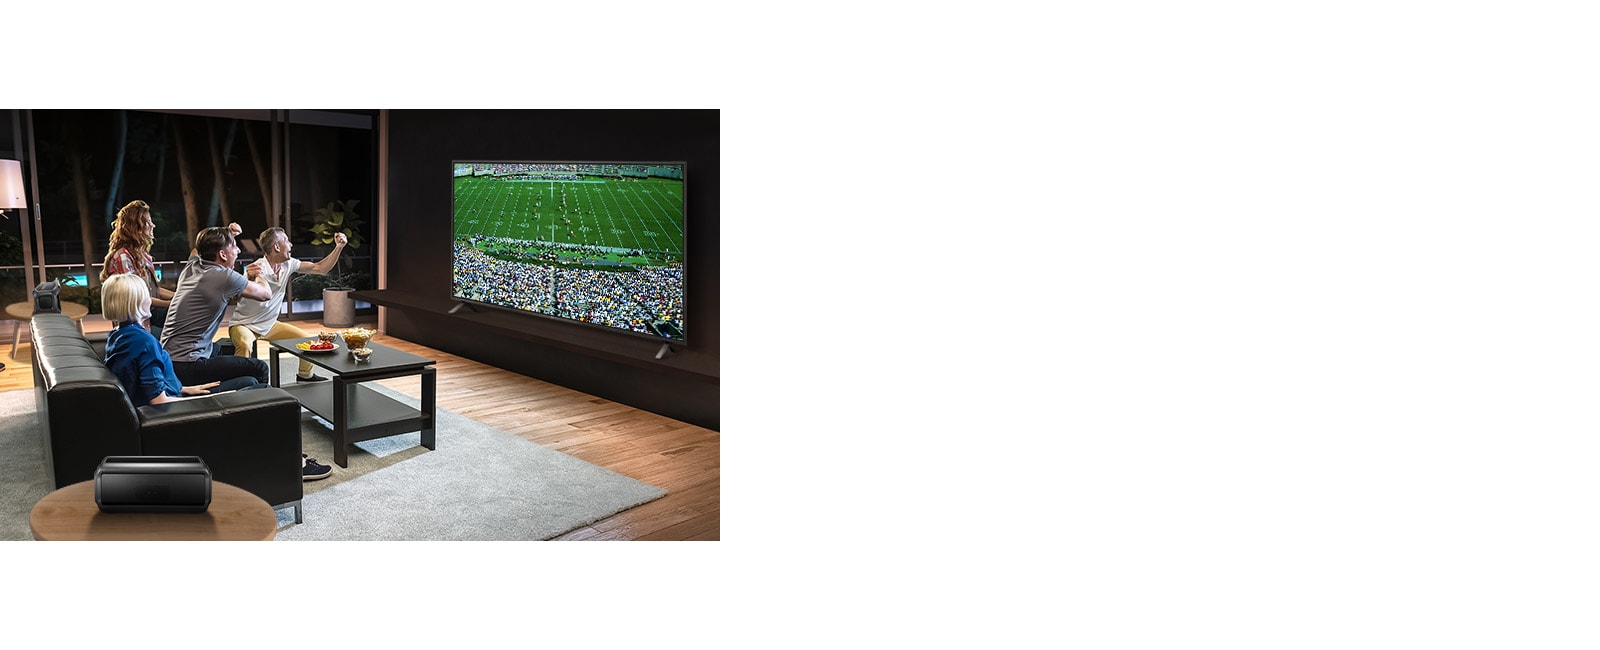 الأشخاص الذين يشاهدون الألعاب الرياضية على التلفزيون في غرفة المعيشة مع مكبرات الصوت الخلفية التي تعمل بتقنية البلوتوث.